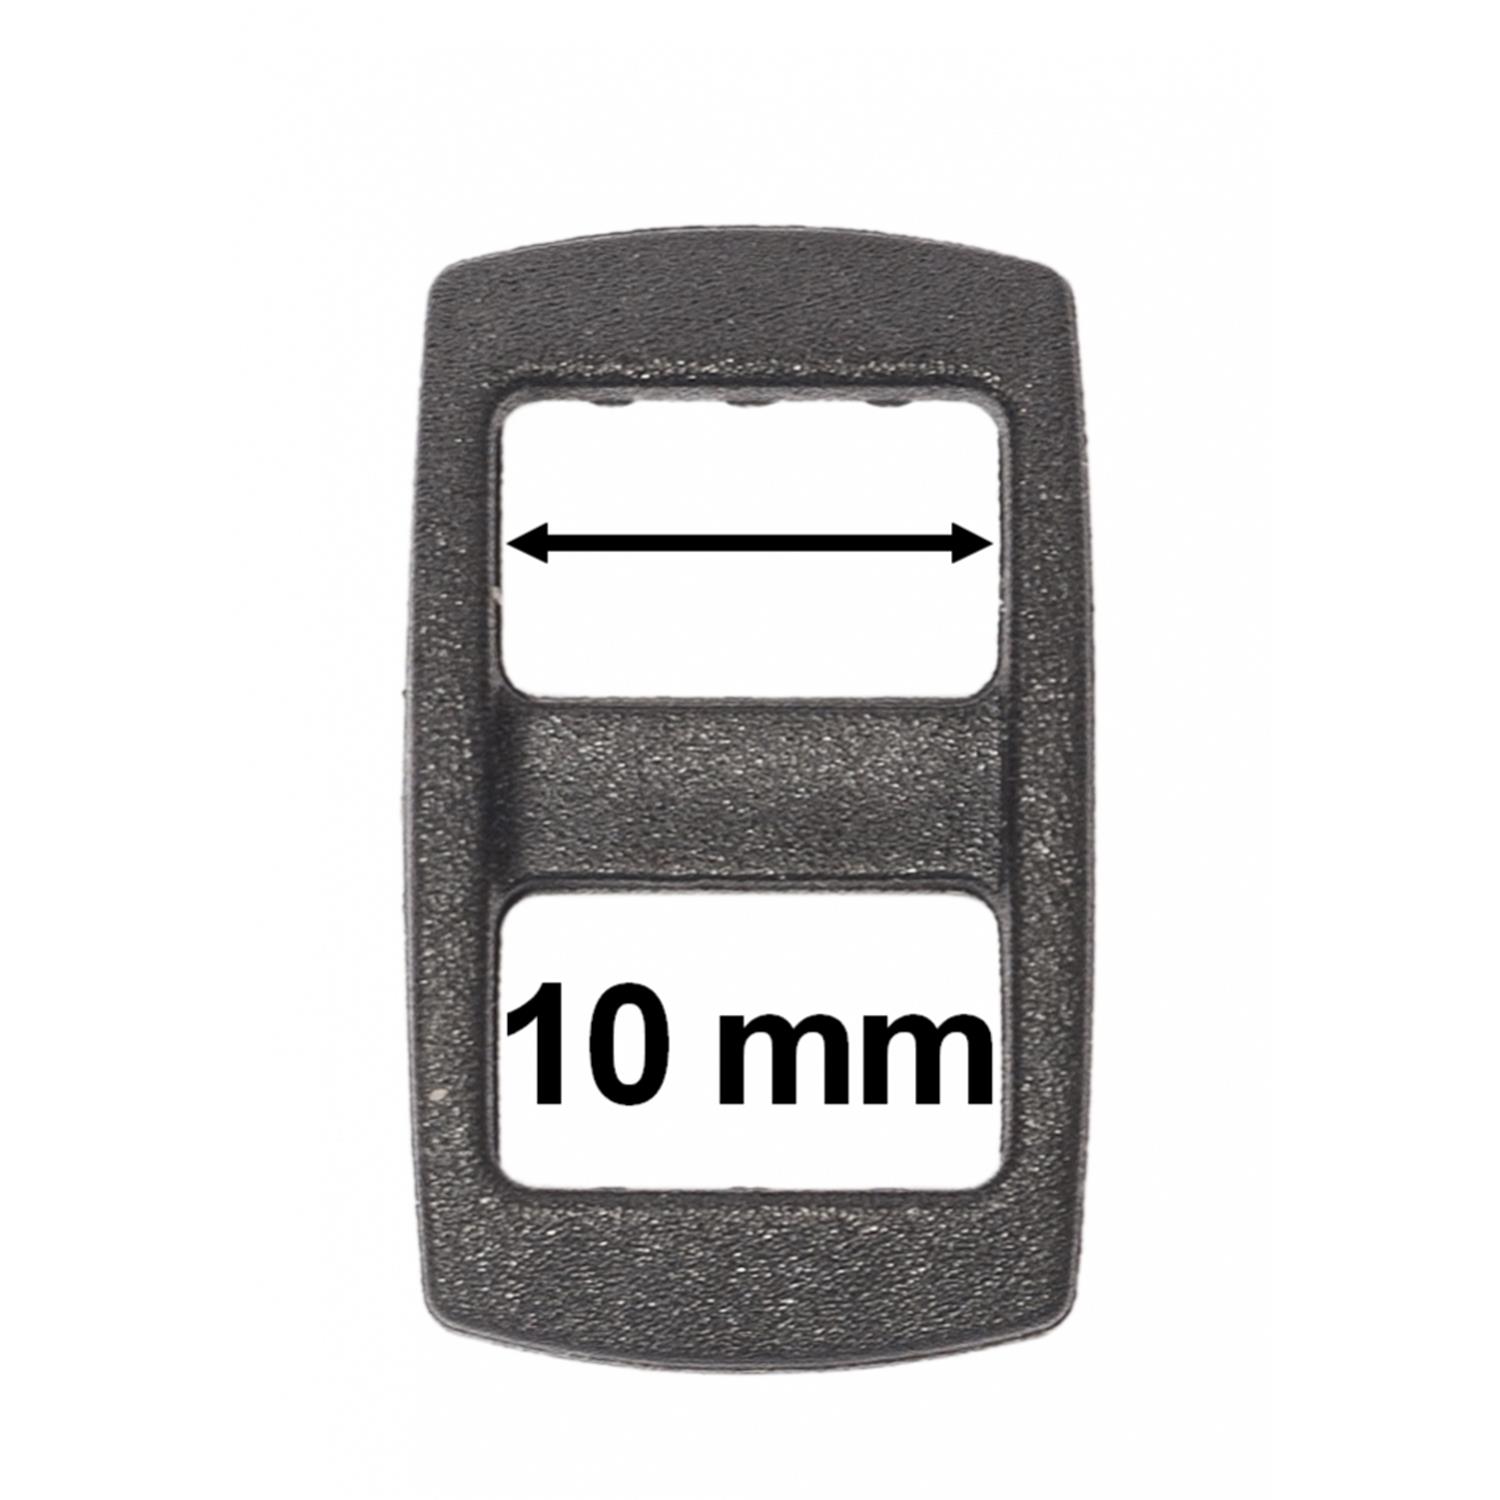 1 Stk. Regulator für Gurtband 10 mm breit, schwarz